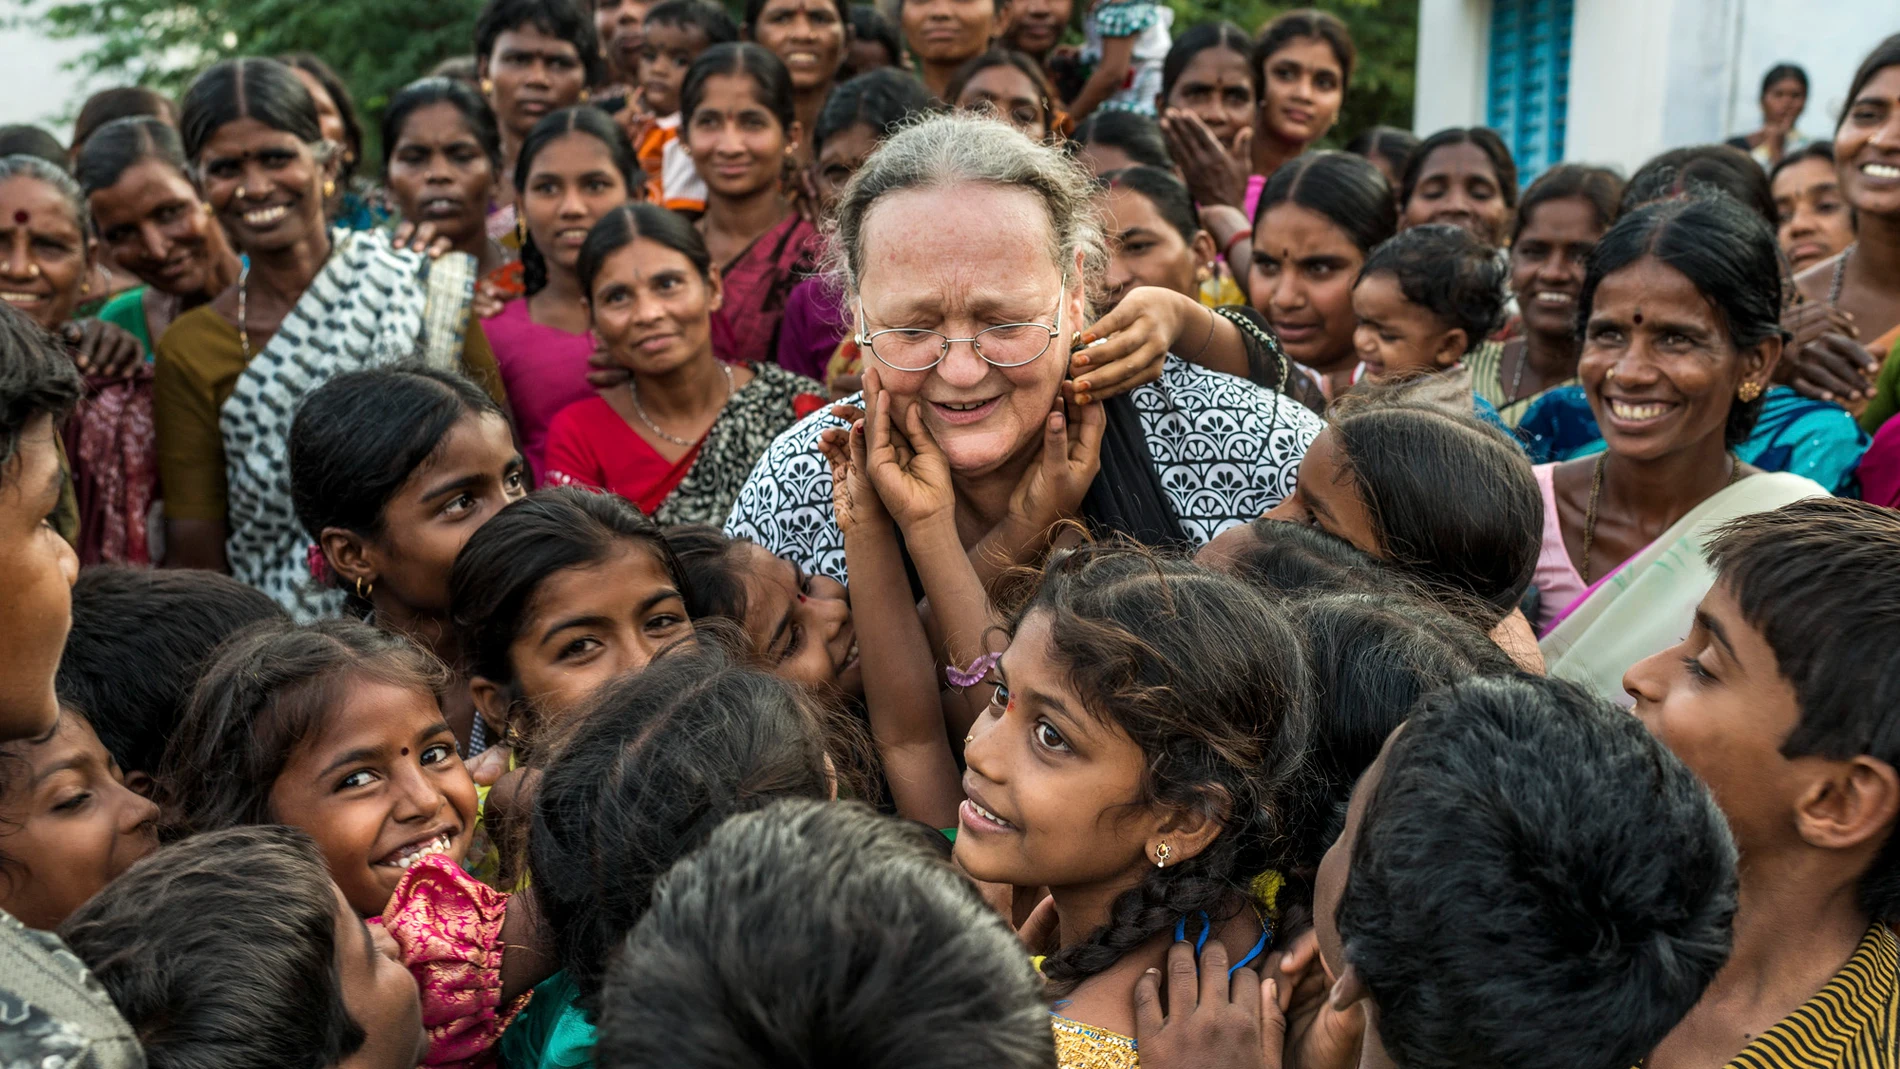 Anna Ferrer, en la India rodeada de mujeres y niñas en India